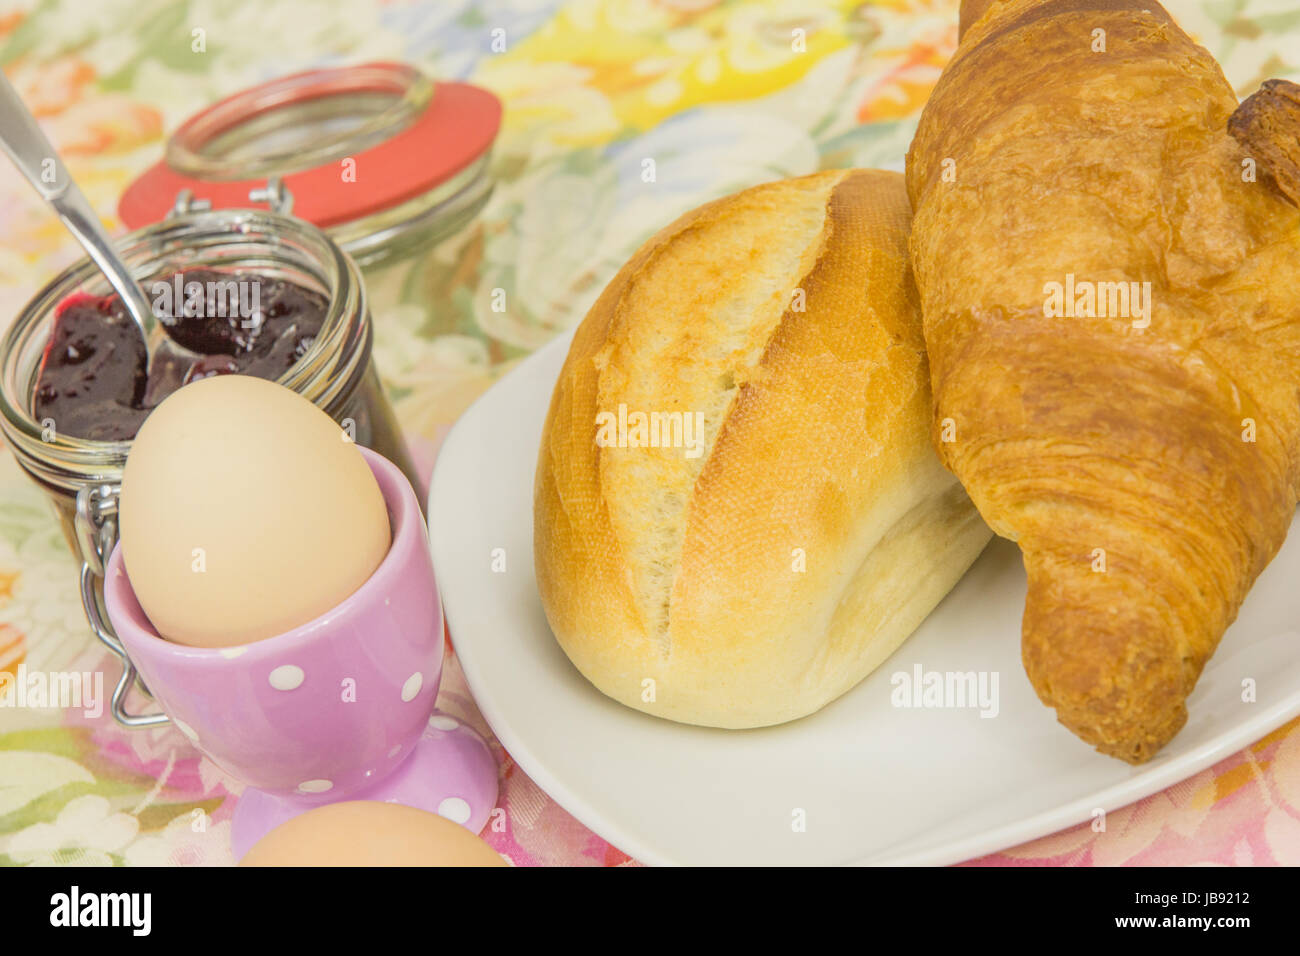 Frühstück mit Brötchen, Croissant, Ei und Marmelade Stock Photo